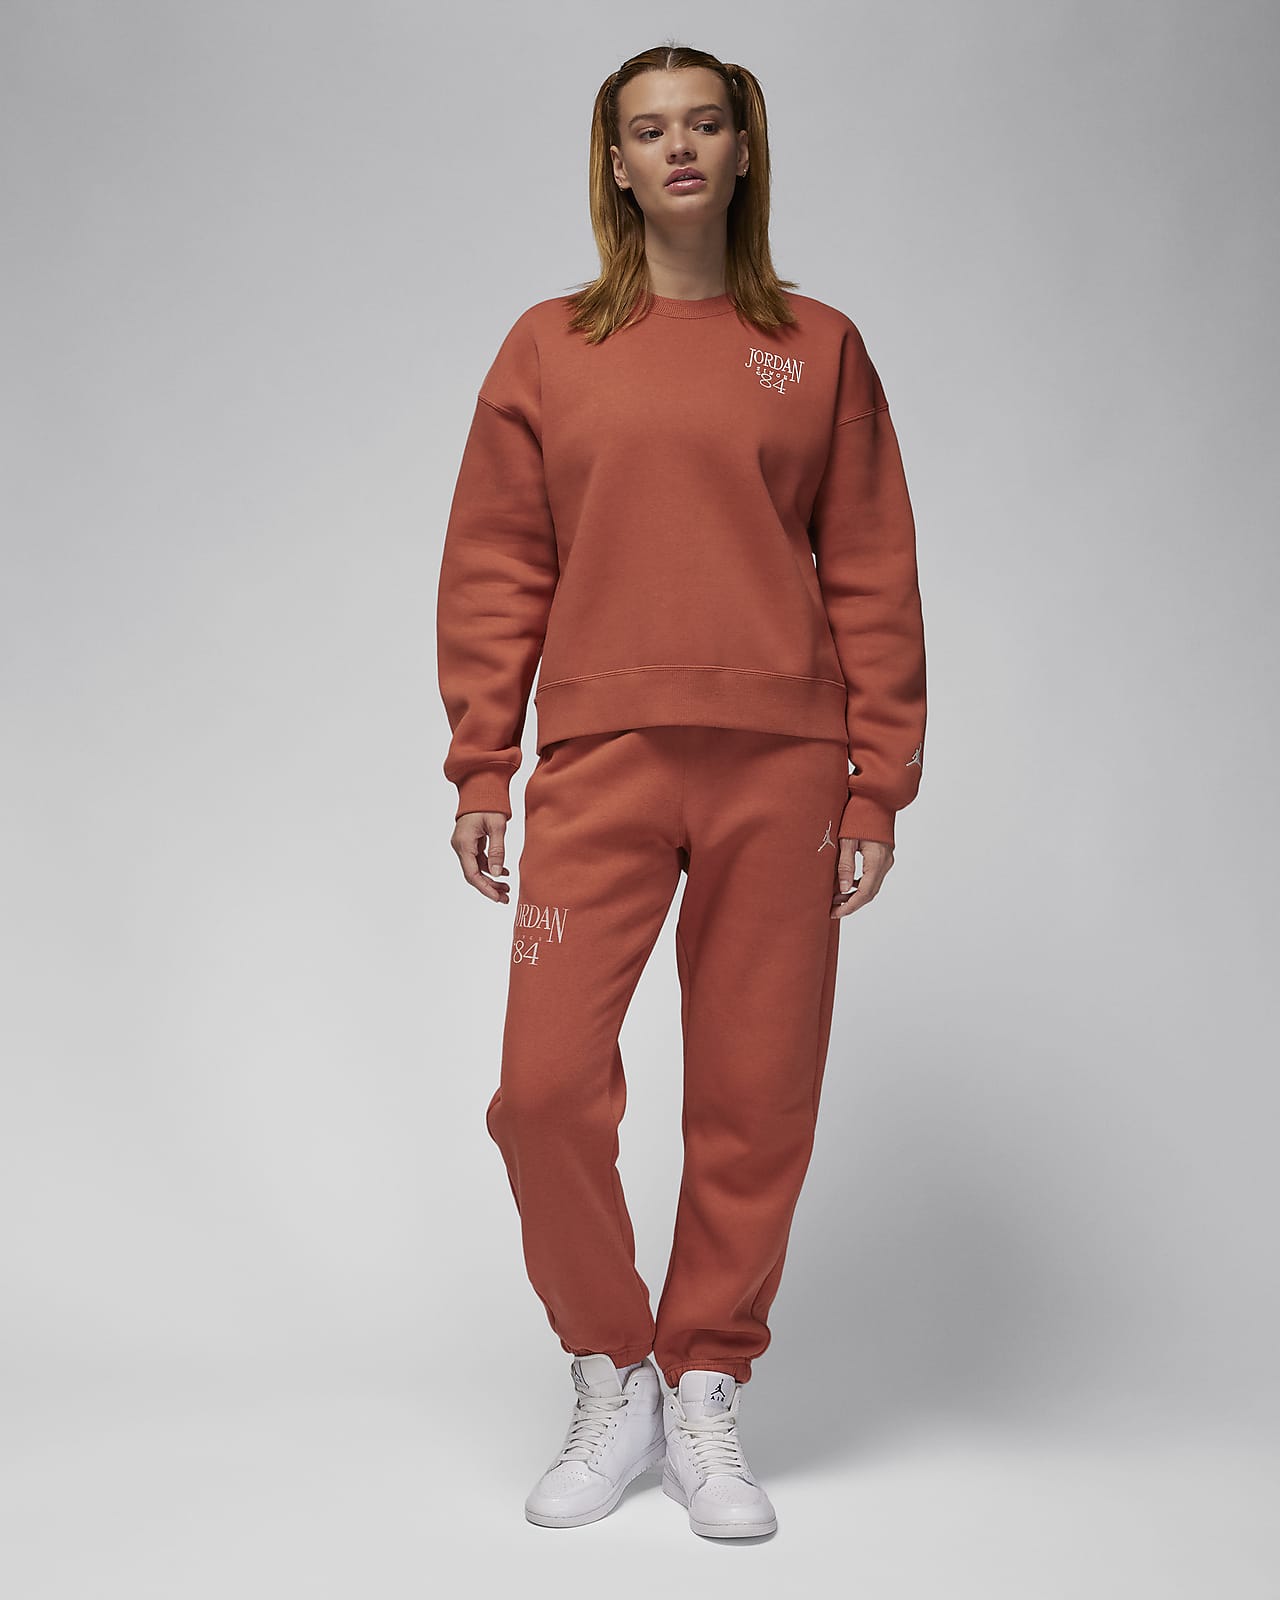 Jordan Brooklyn Fleece Women's Crew-Neck Sweatshirt. Nike IE